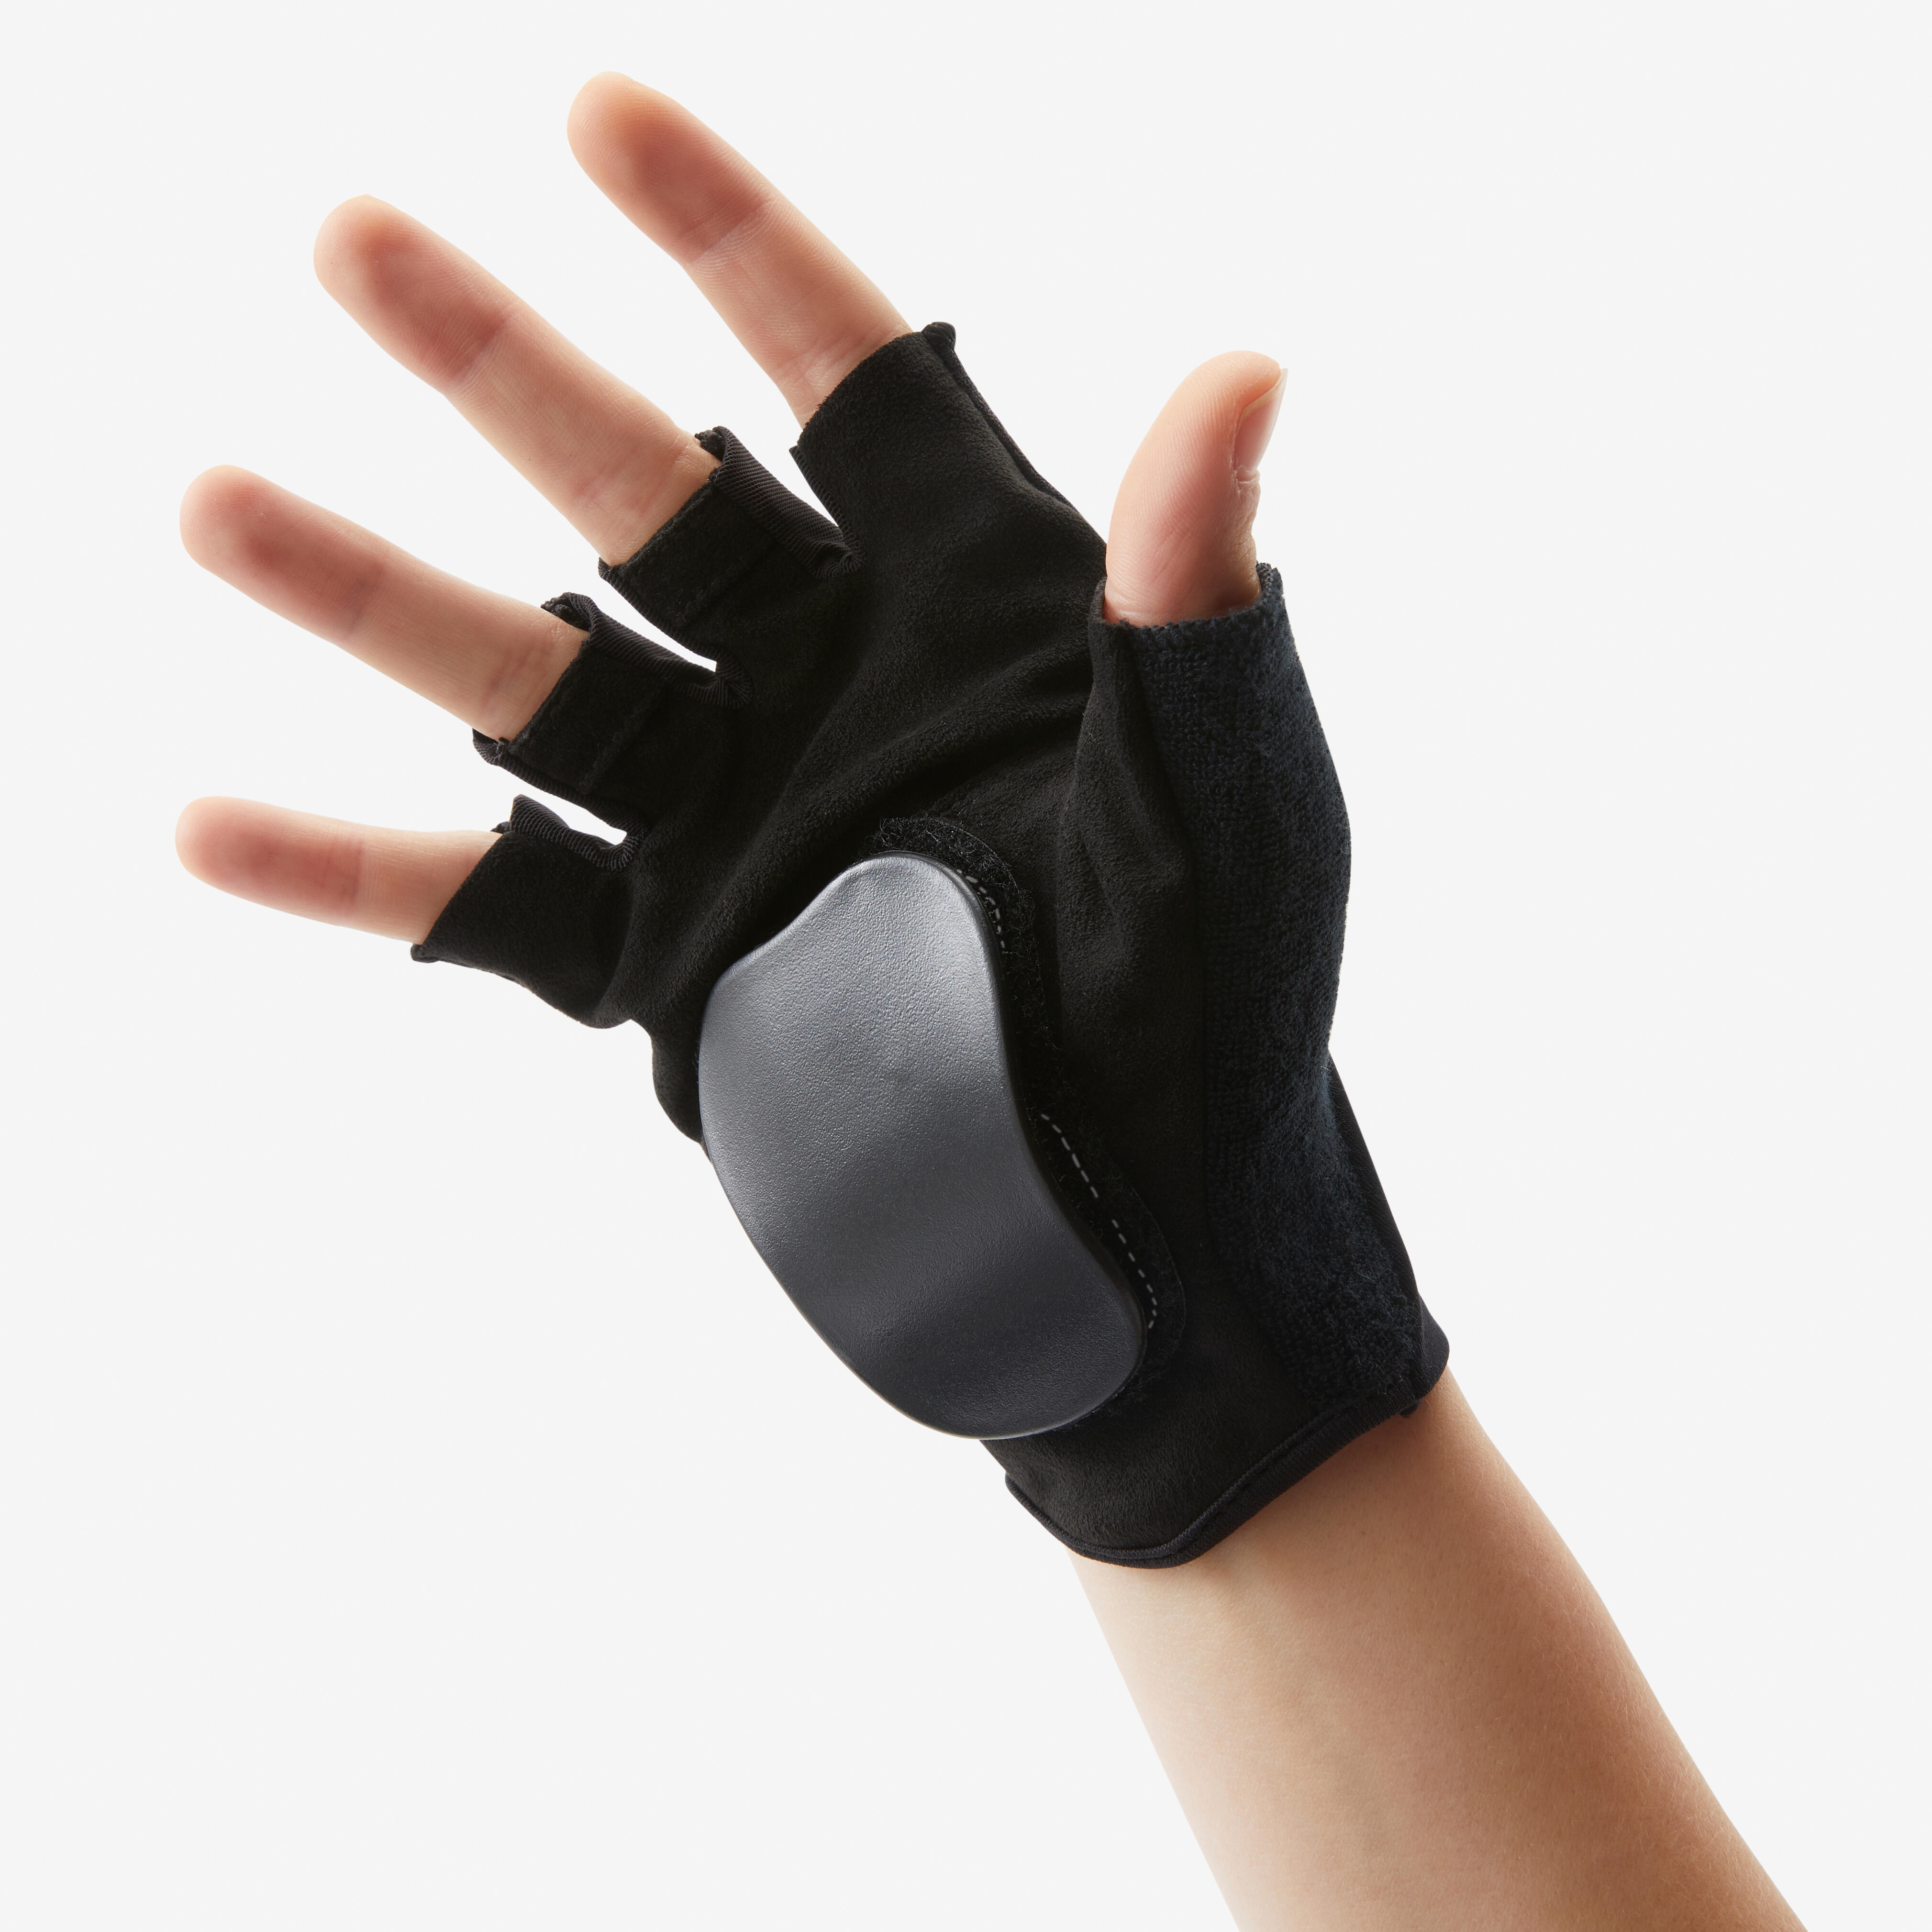 OXELO Protektoren Schoner Inliner Handschuhe MF900 schwarz L